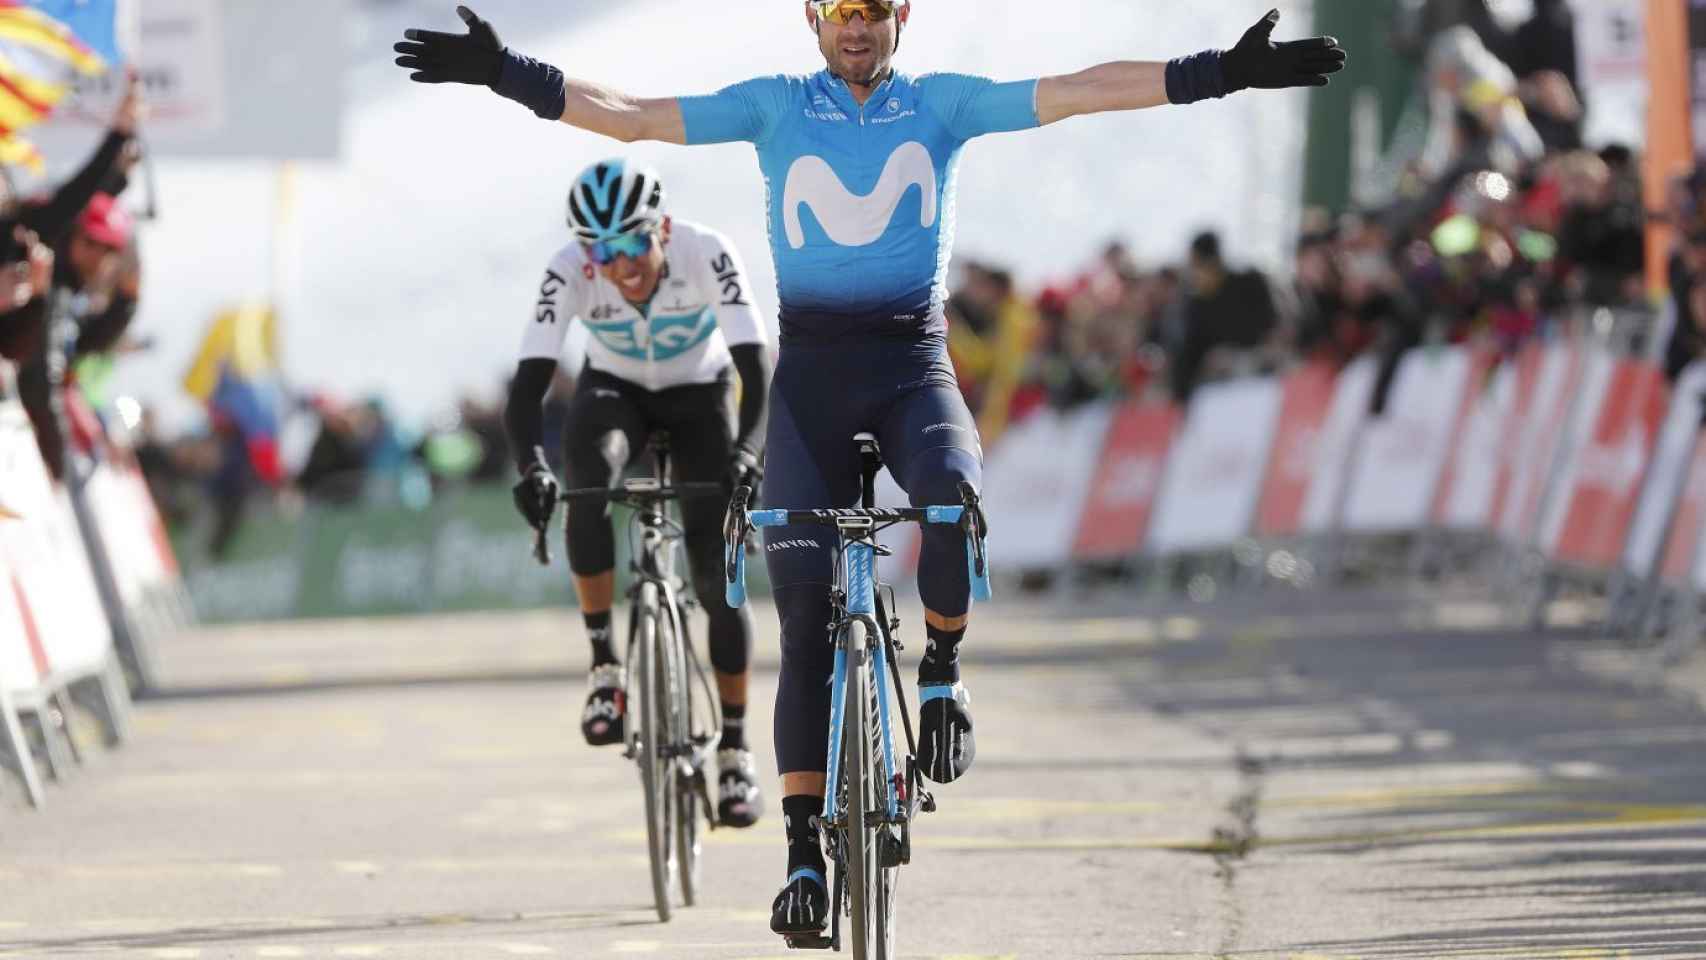 Alejandro Valverde (38) ya ha participado 10 veces en el Tour de Francia. El año pasado tuvo que abandonar en la primera etapa tras romperse la rótula en una caída. Su mejor posición la consiguió en 2015, cuando se llevó el bronce. Será uno de los tres líderes de Movistar.